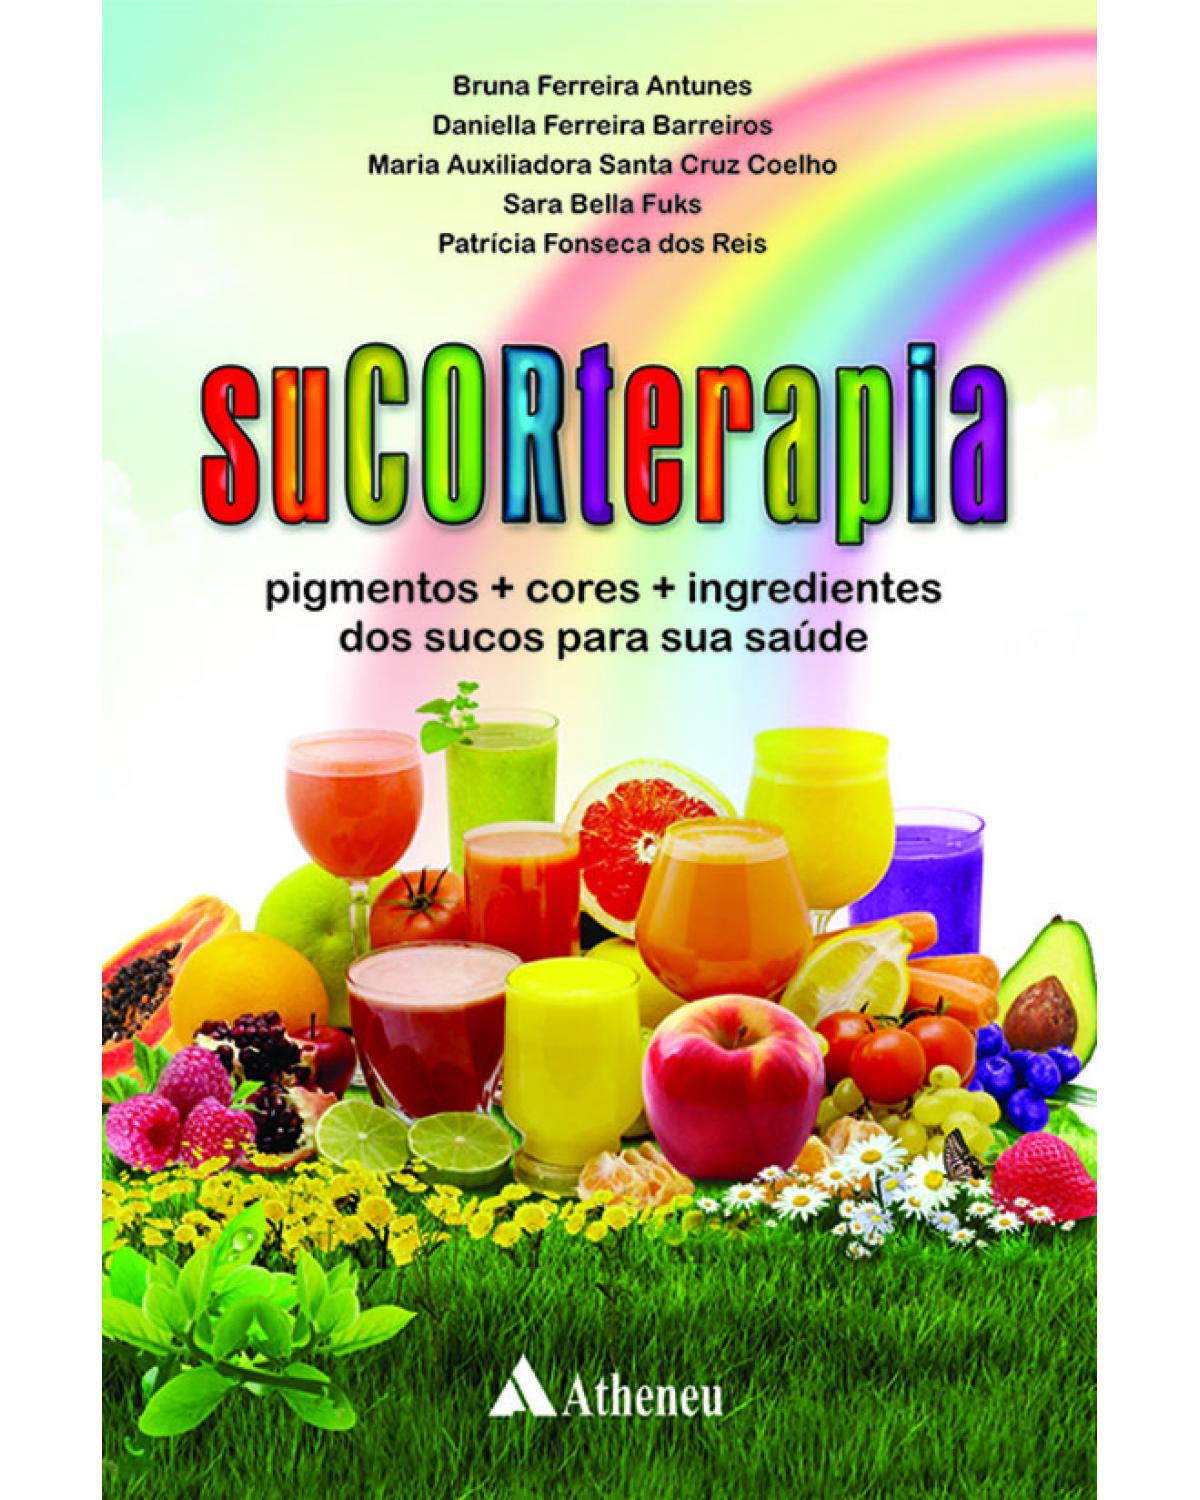 Sucorterapia - pigmentos, cores, ingredientes dos sucos para sua saúde - 1ª Edição | 2013